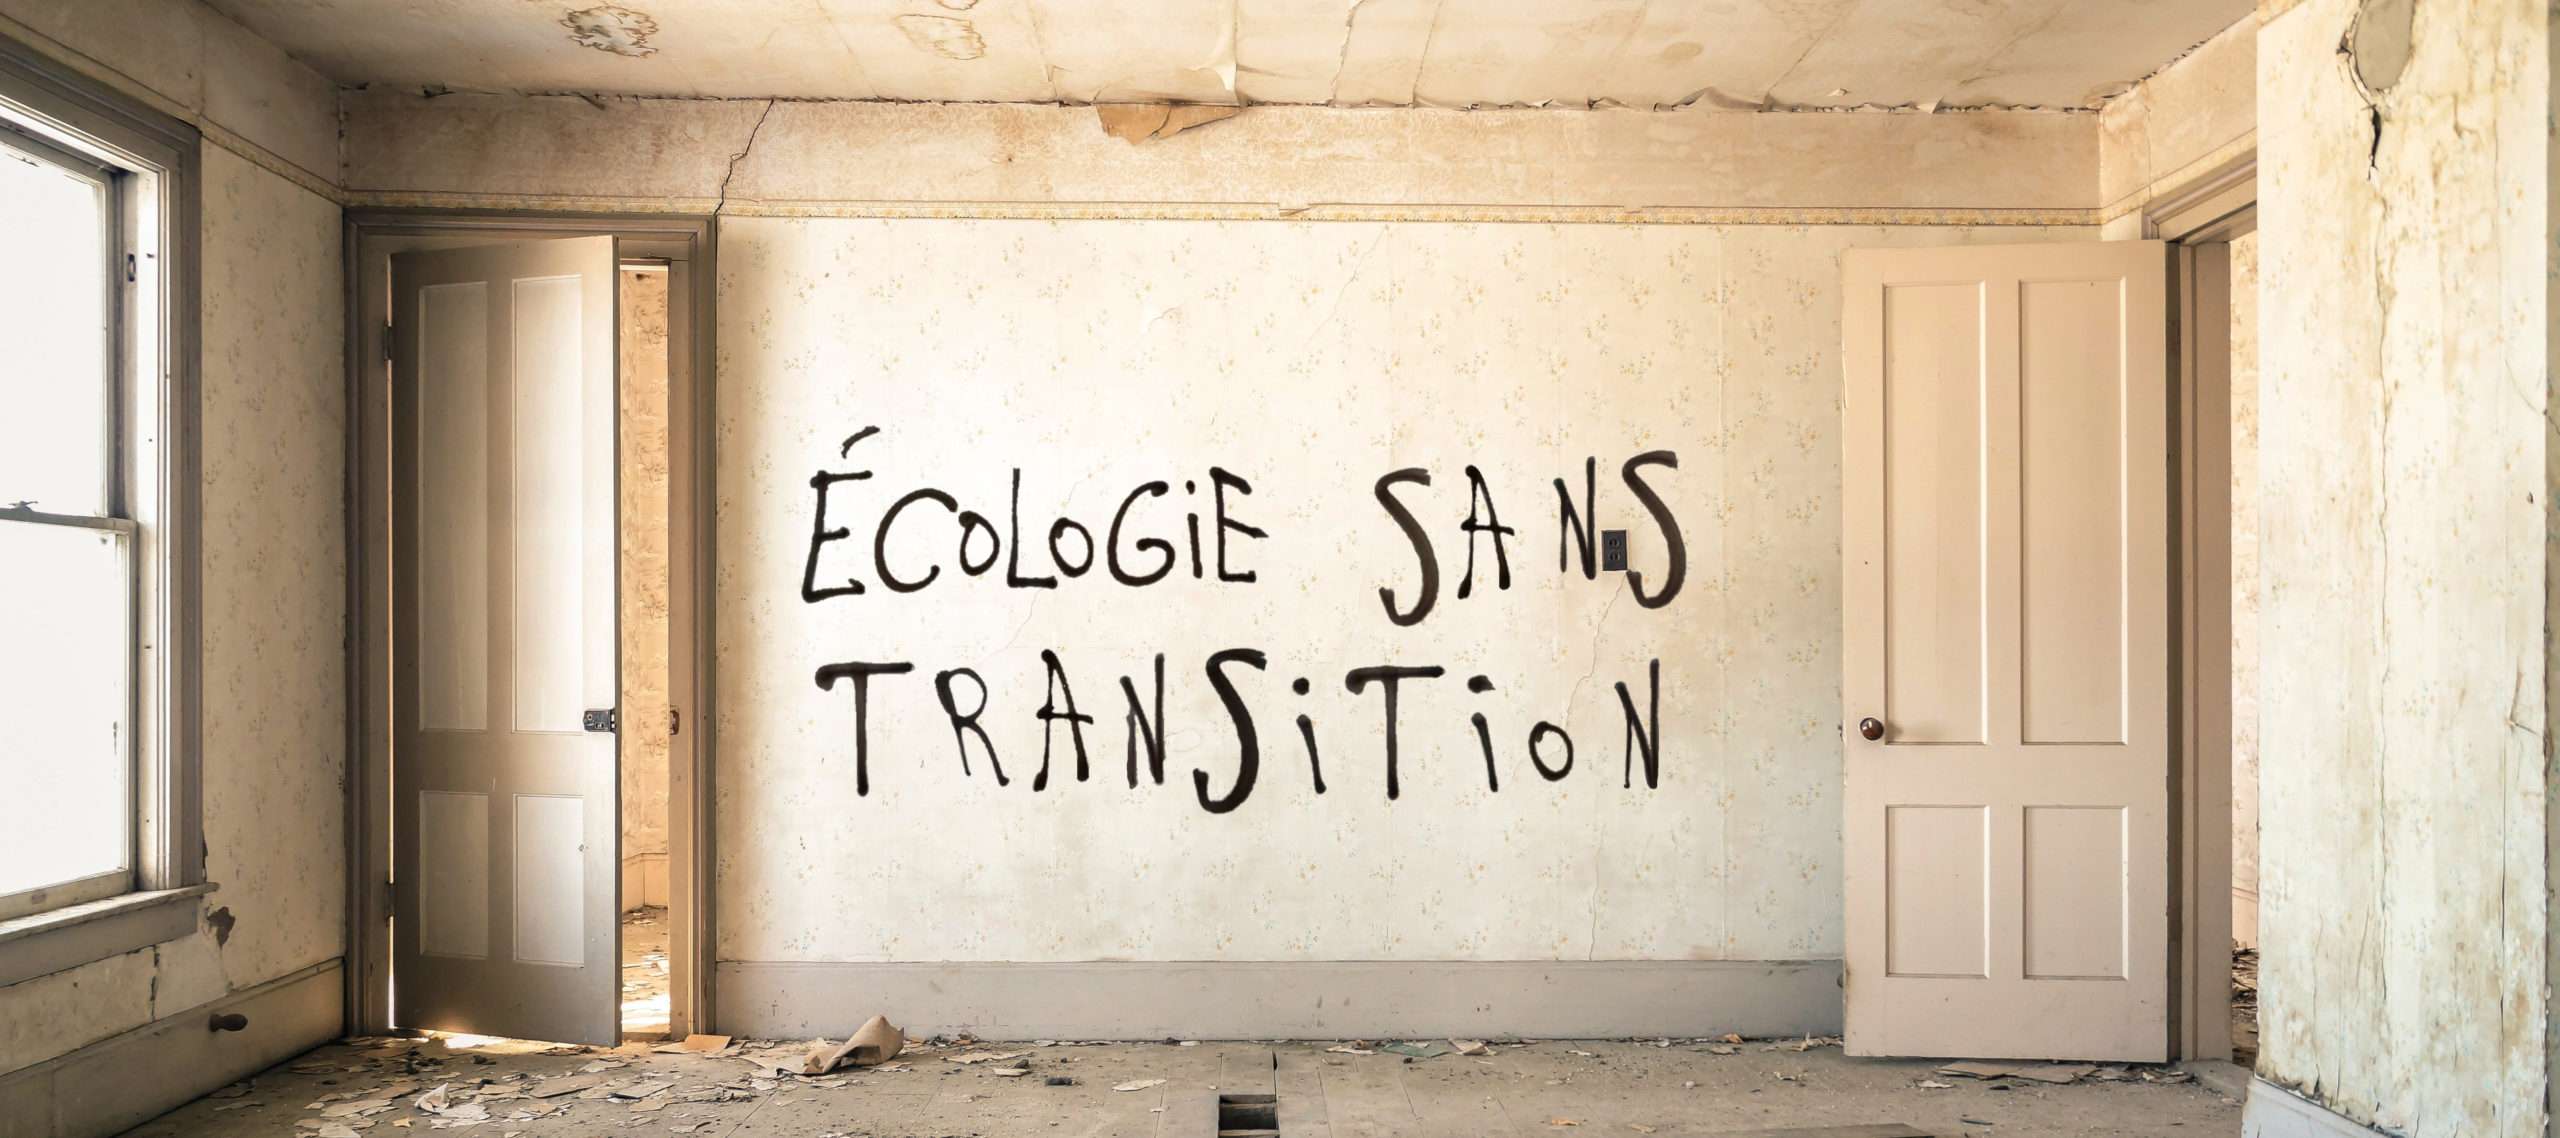 Ecologie sans transition tag graffiti Désobéissance ecolo paris